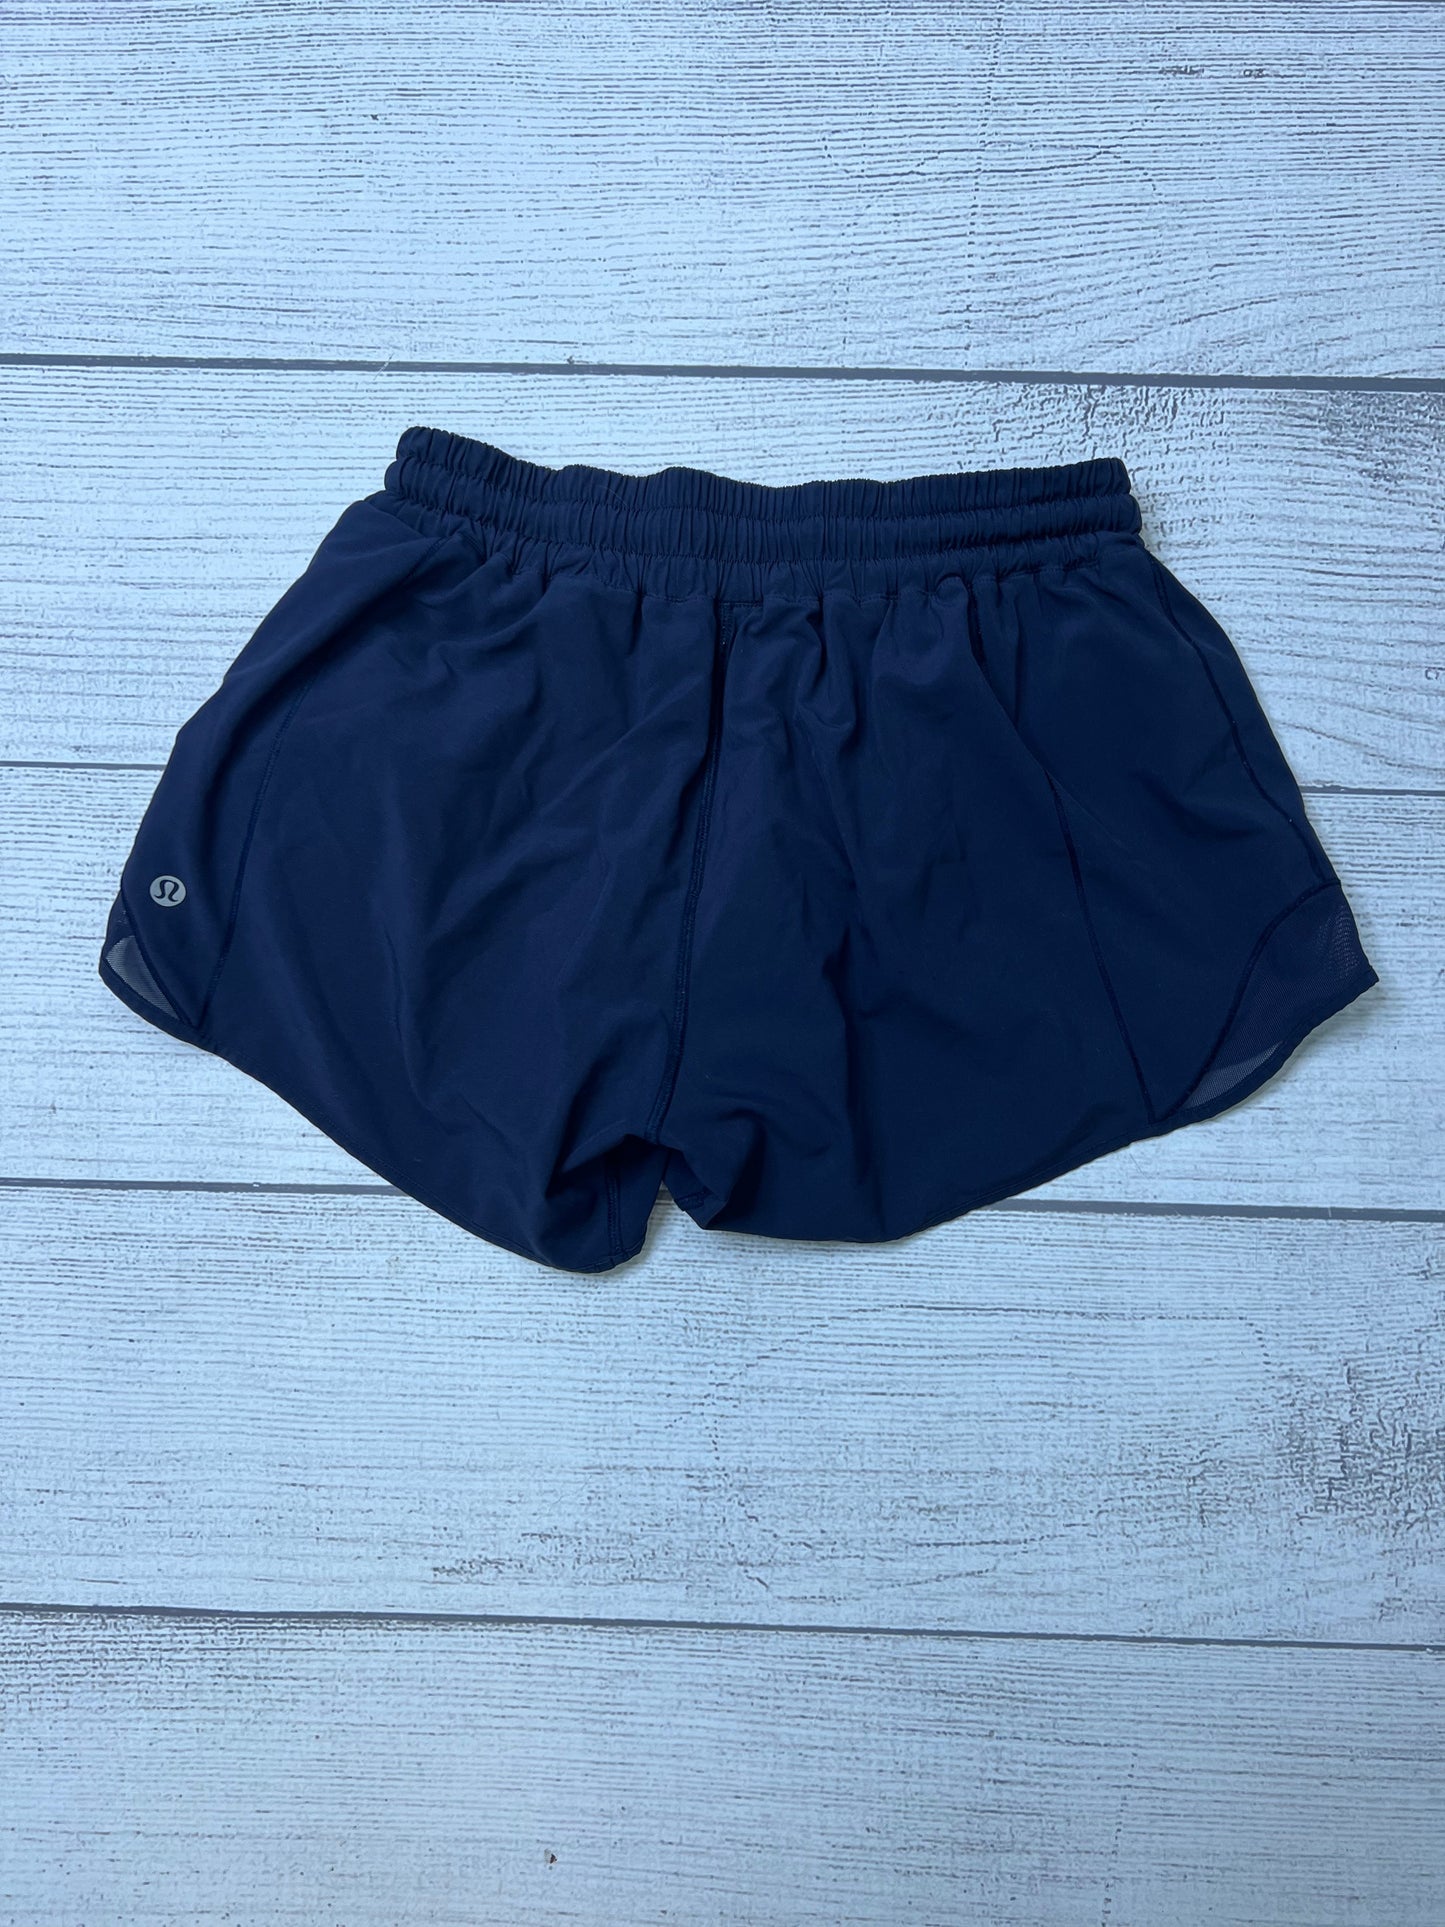 Athletic Shorts By Lululemon  Size: 6 long